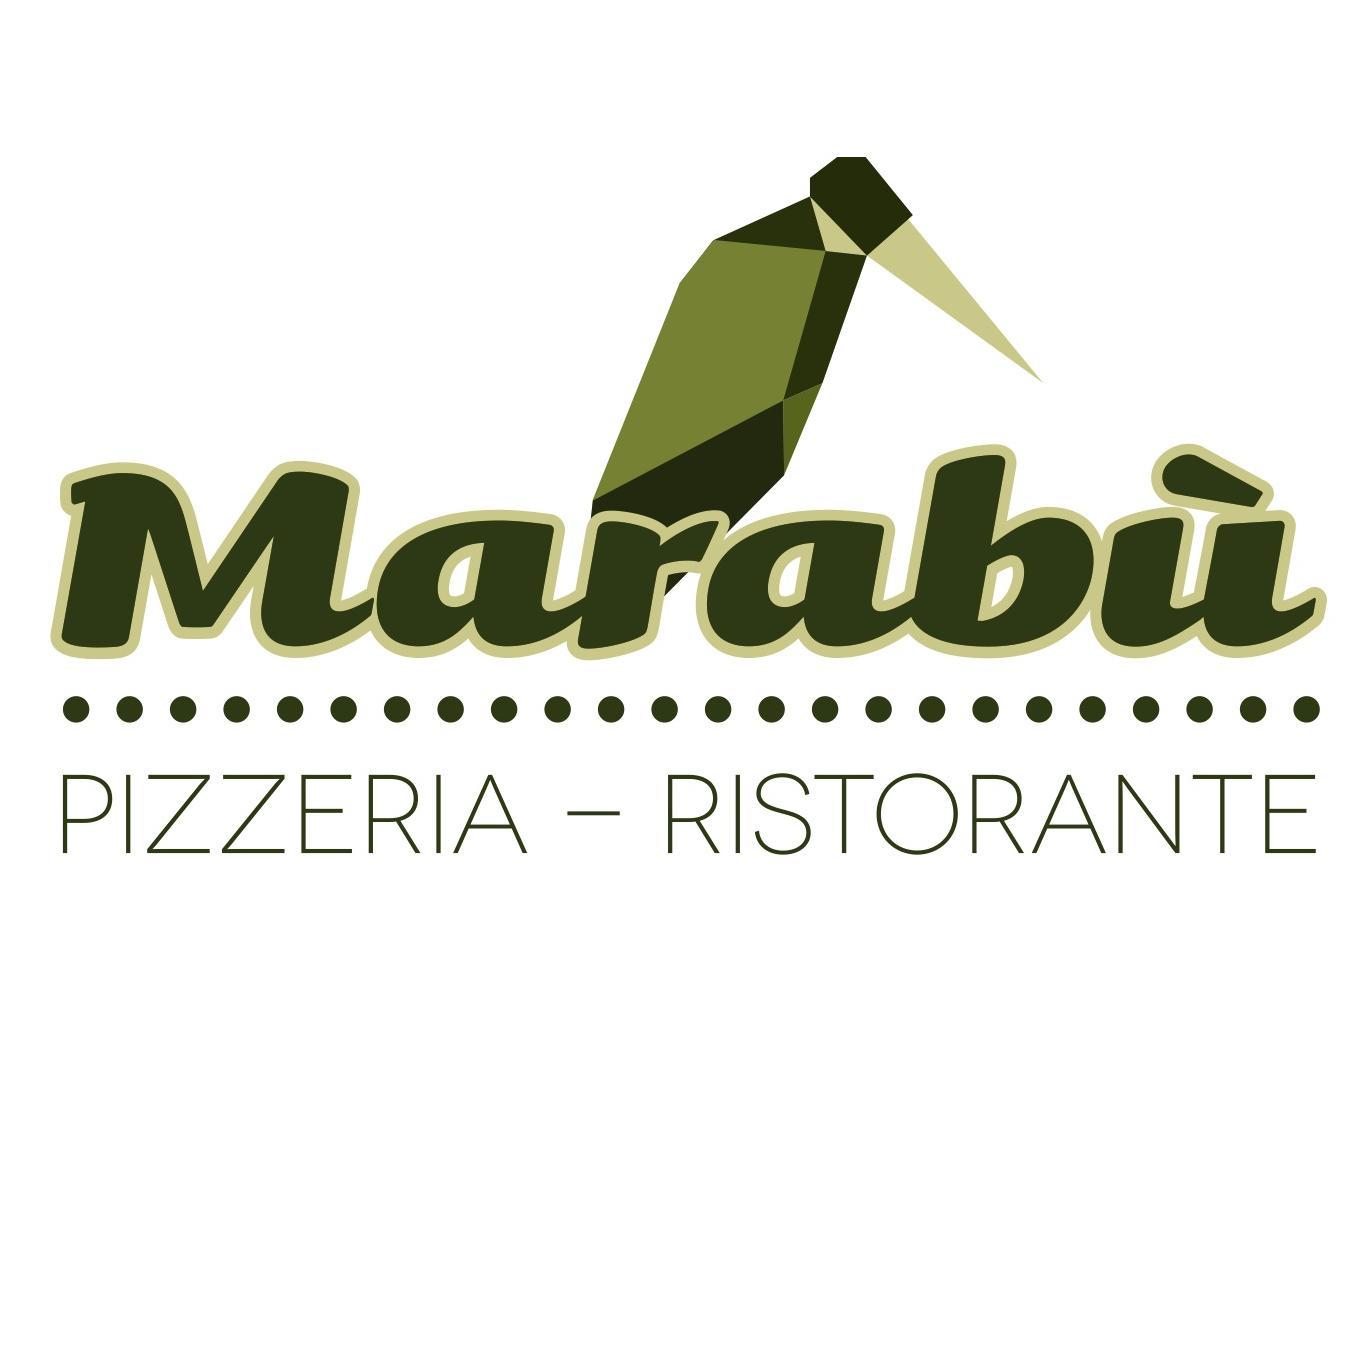 Ristorante-Pizzeria aperto 7 giorni su 7 dalle 19 alle 24. Effettua servizio a domicilio. Tel. 080/3432942, 3463760878